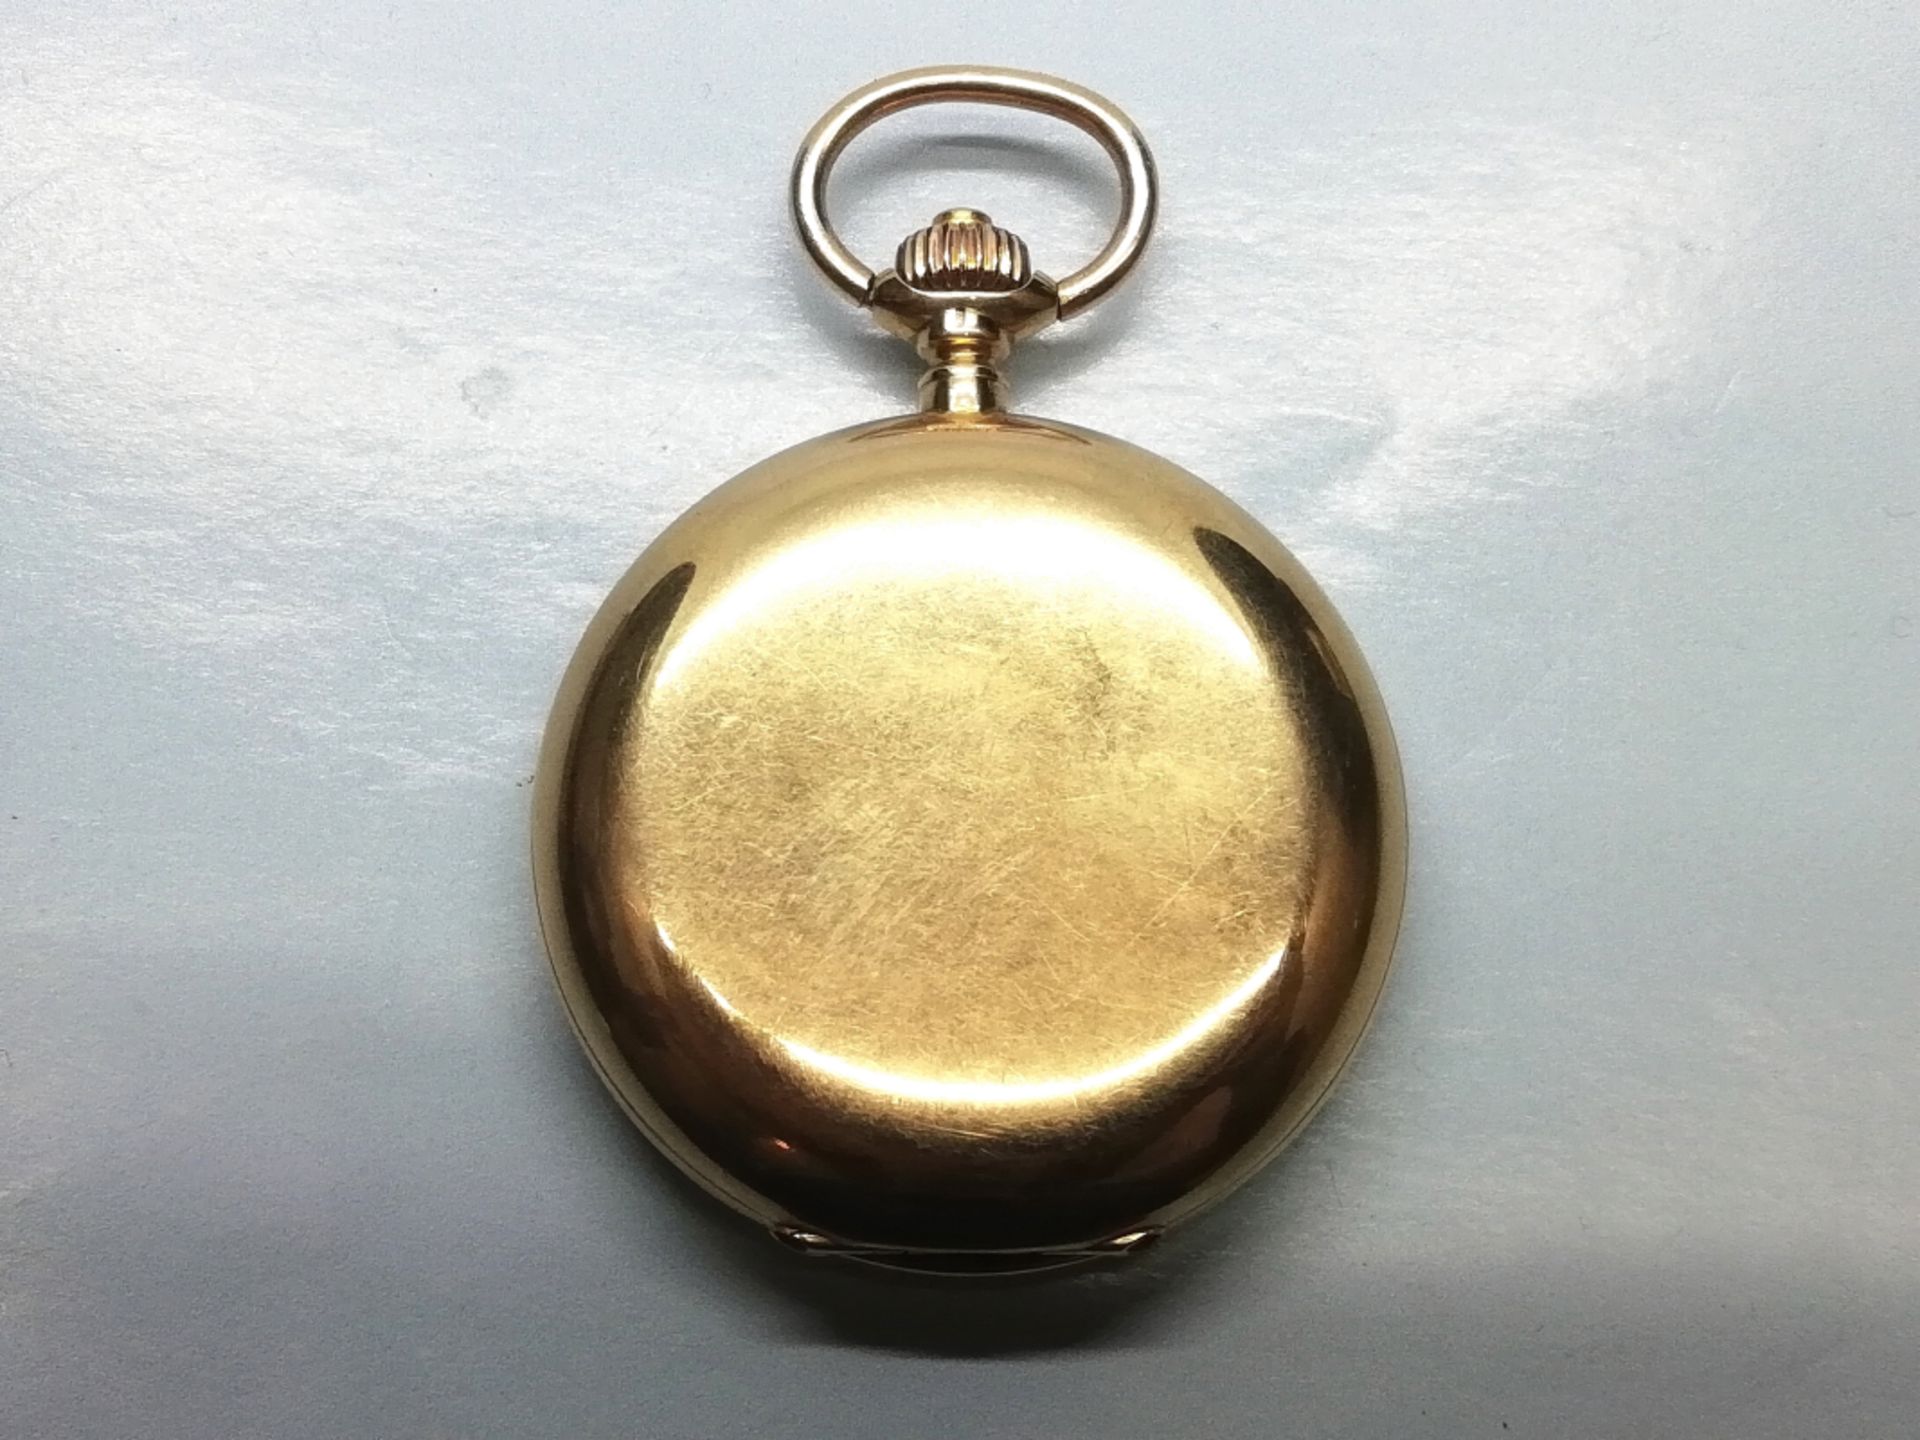 Goldene Taschenuhr mit Vollkalender, um 1900 - Bild 2 aus 2